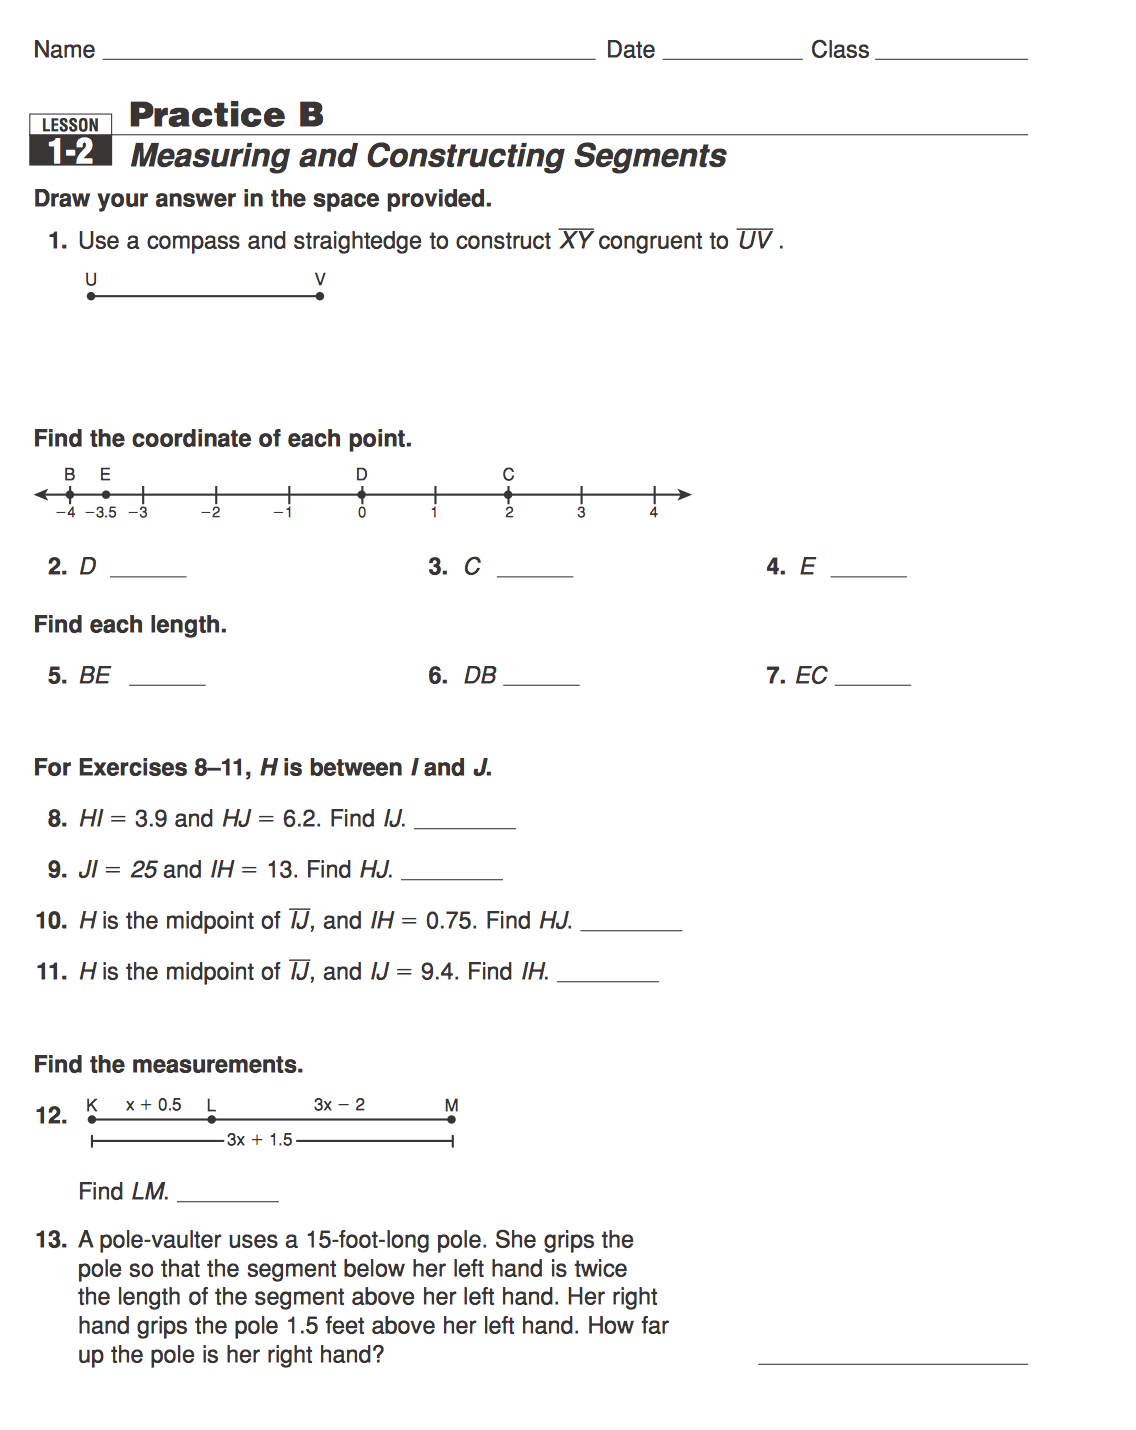 Worksheet 1 2 Measuring Segments Answer Key